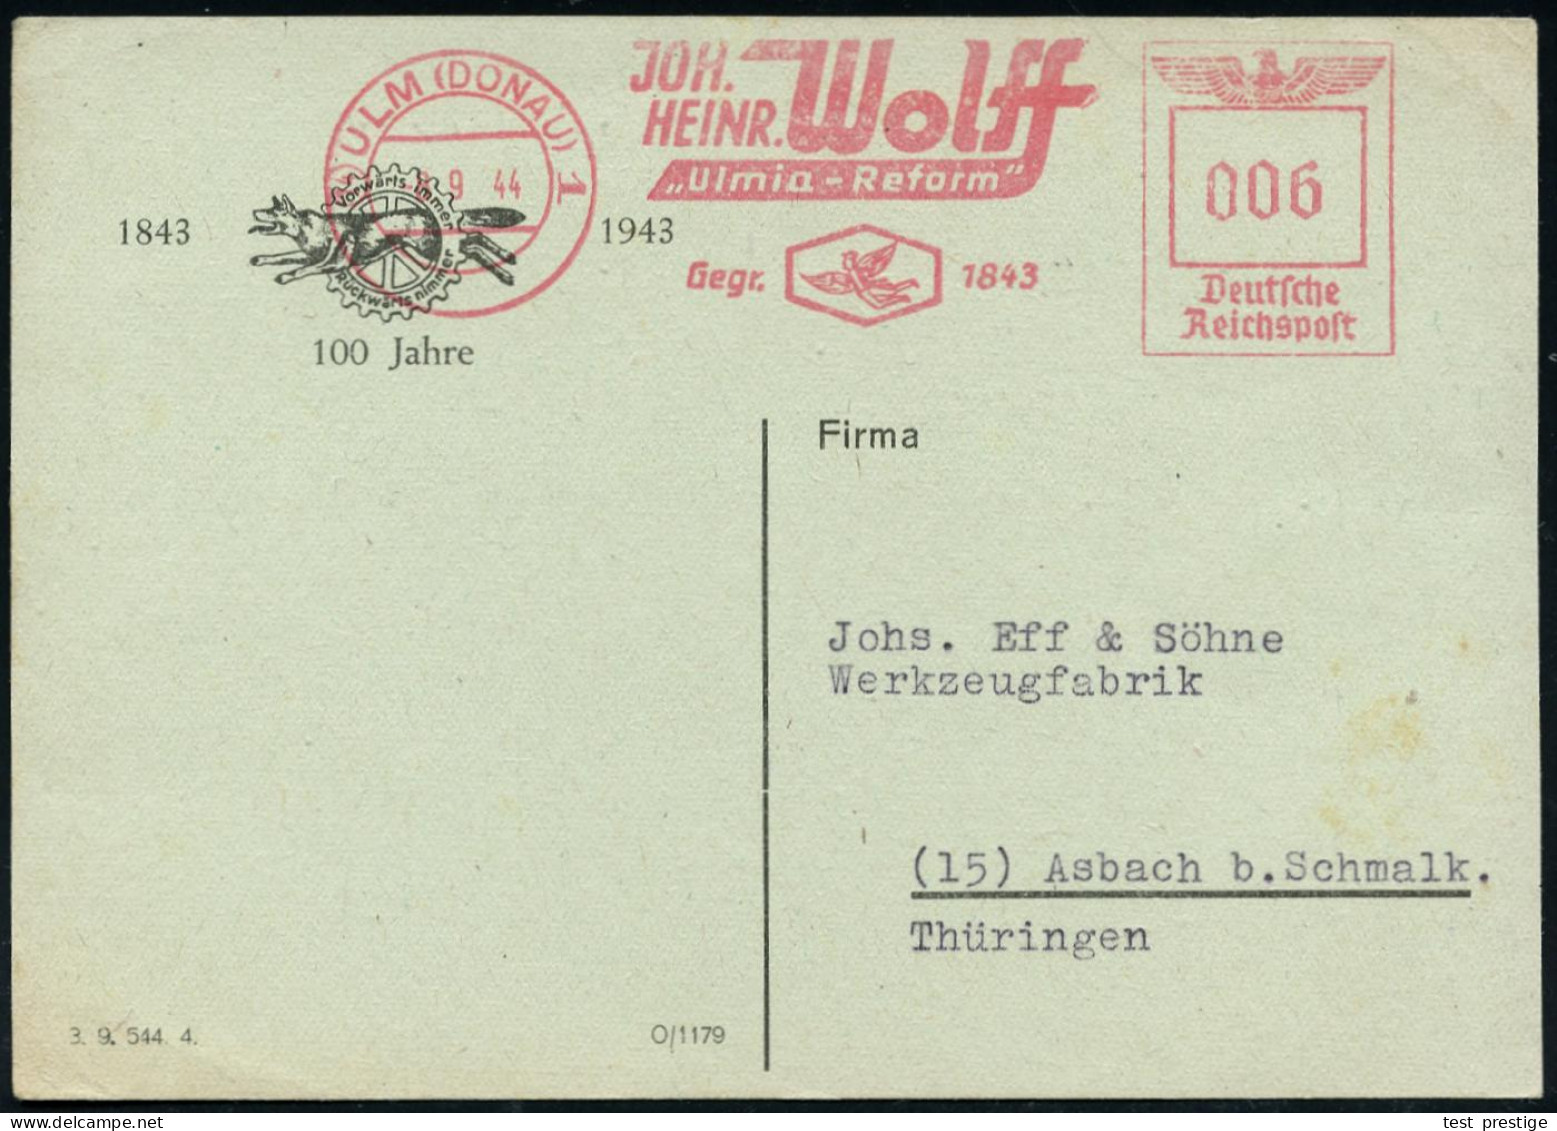 (14) ULM (DONAU) 1/ JOH./ HEINR. Wolff/ "Ulmer-Reform"/ Gegr.1843 1944 (8.9.) Seltener AFS Francotyp Mit Postleitzahl != - Autres (Air)